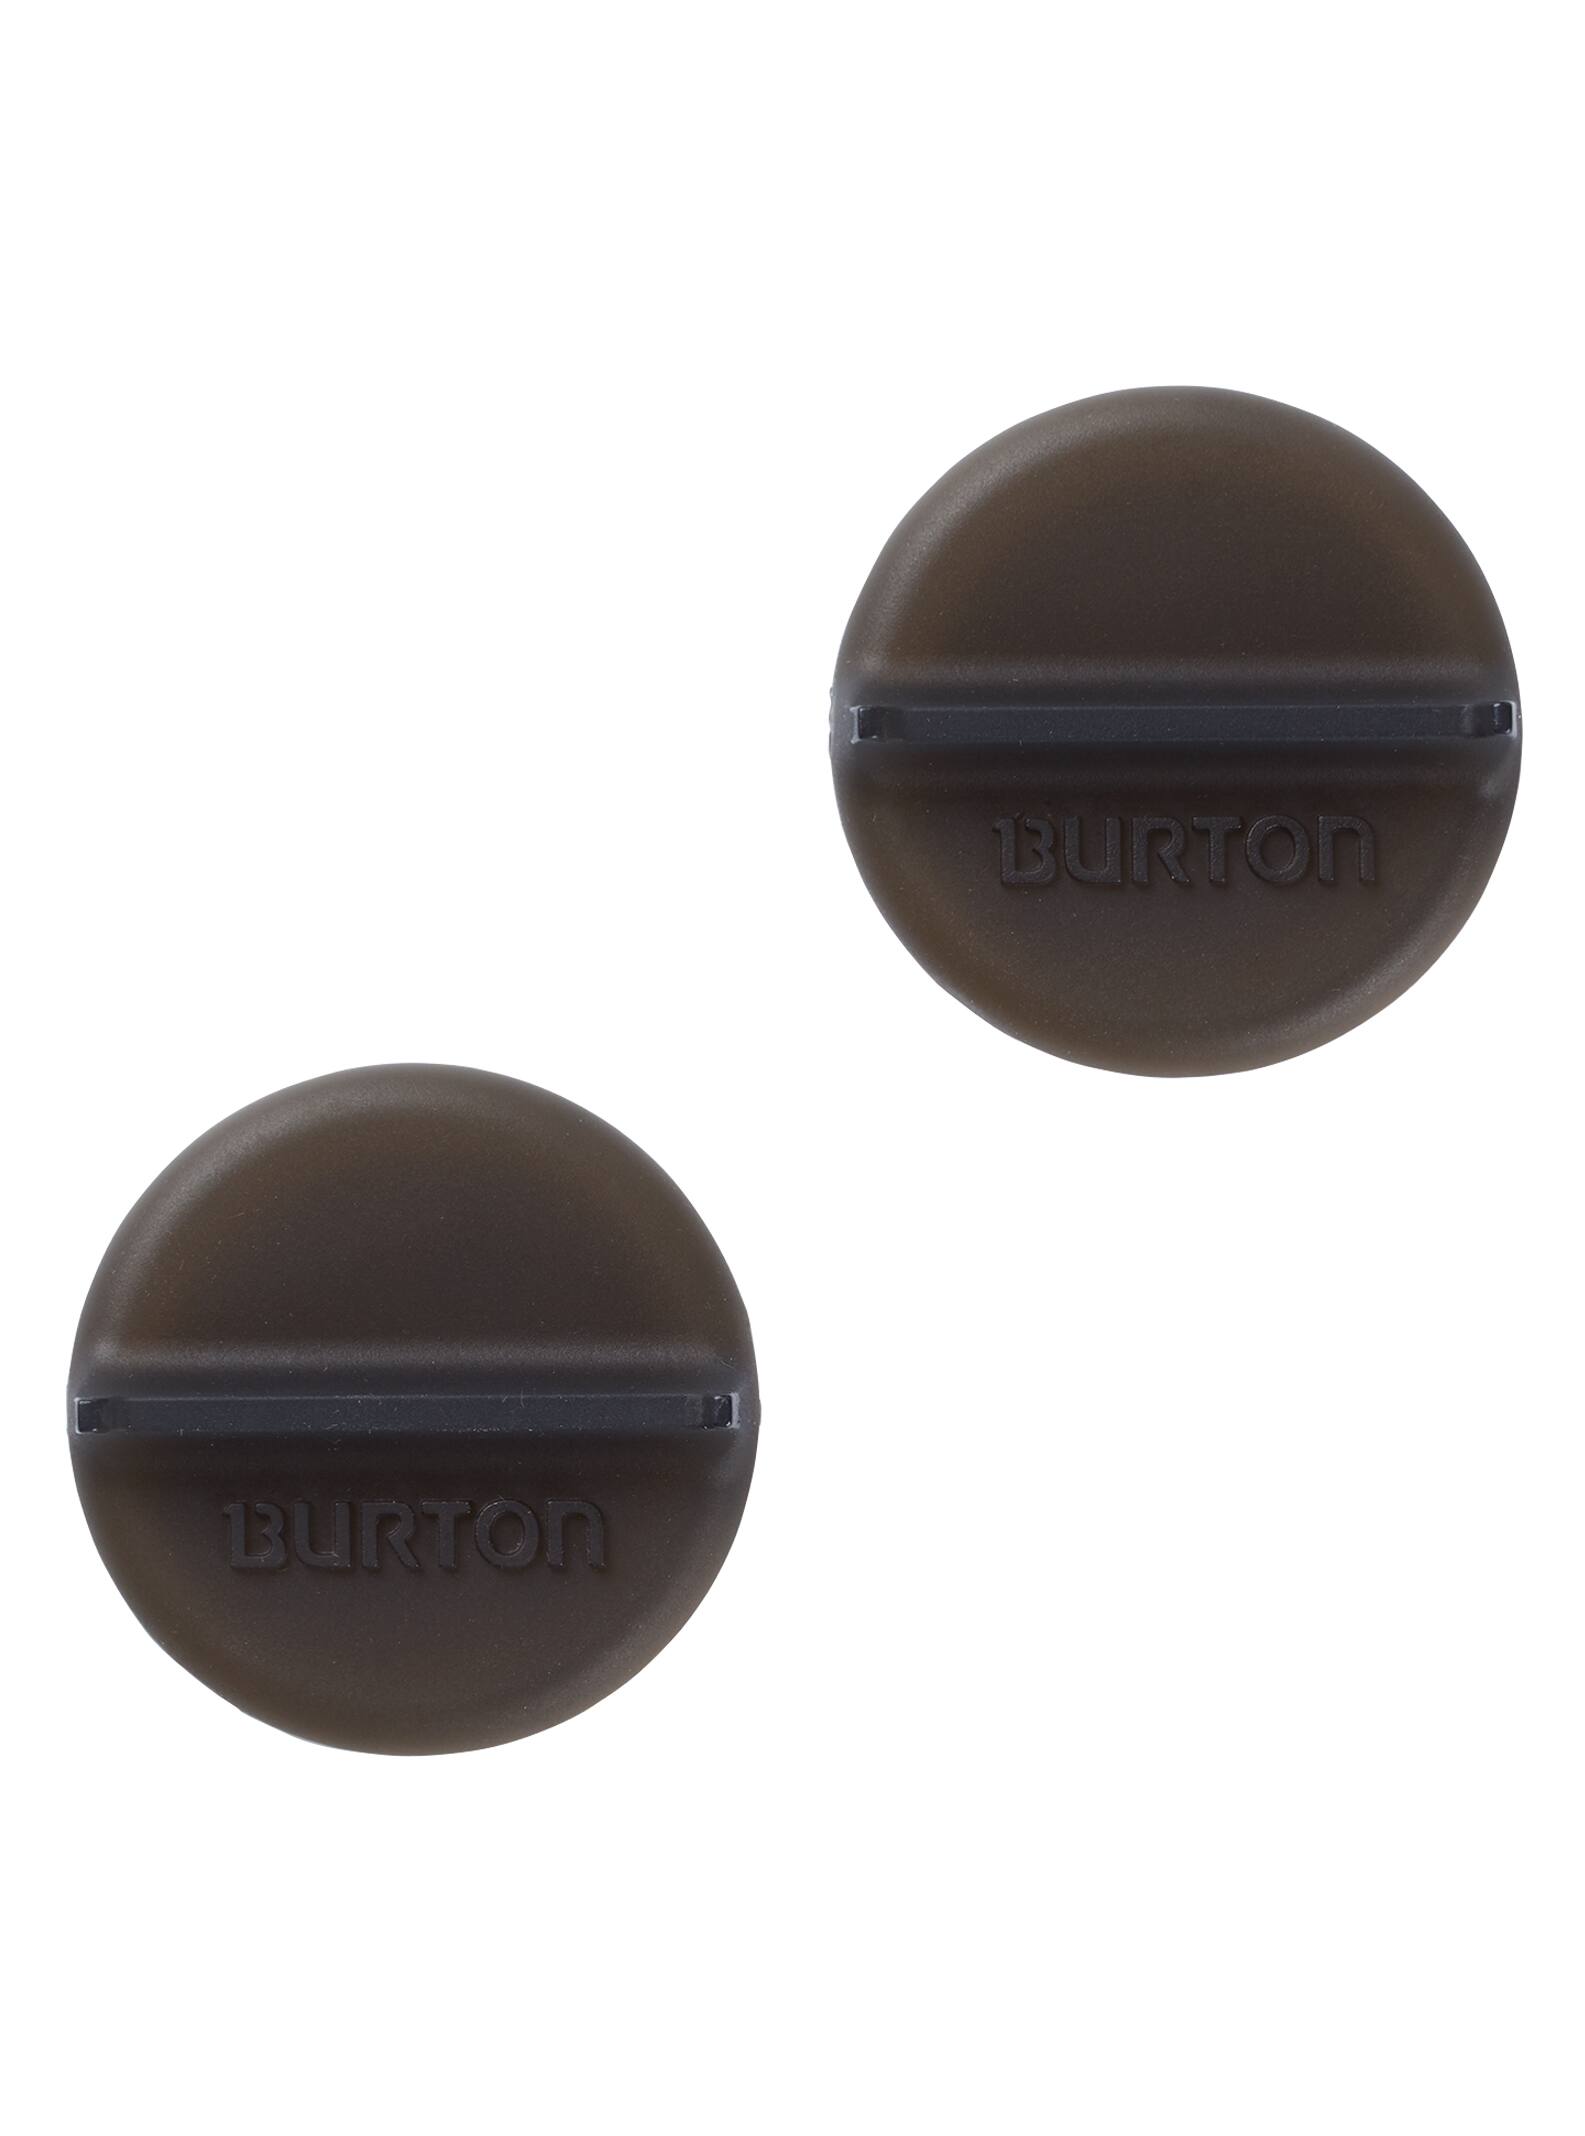 Burton - Mini tapis antidérapant Scraper, Translucent Black